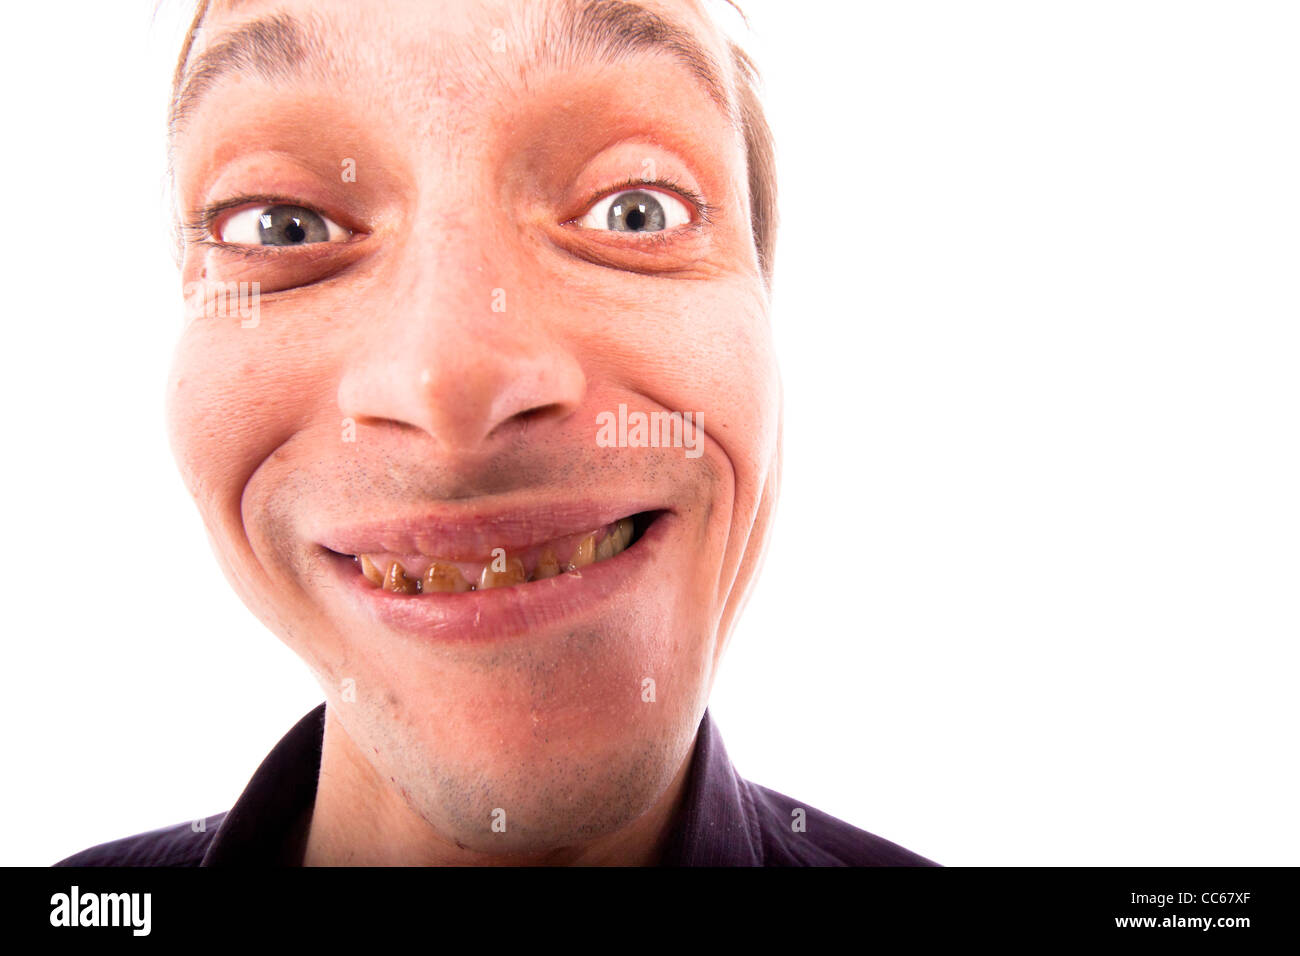 Dettaglio del brutto viso uomo, isolato su sfondo bianco. Foto Stock